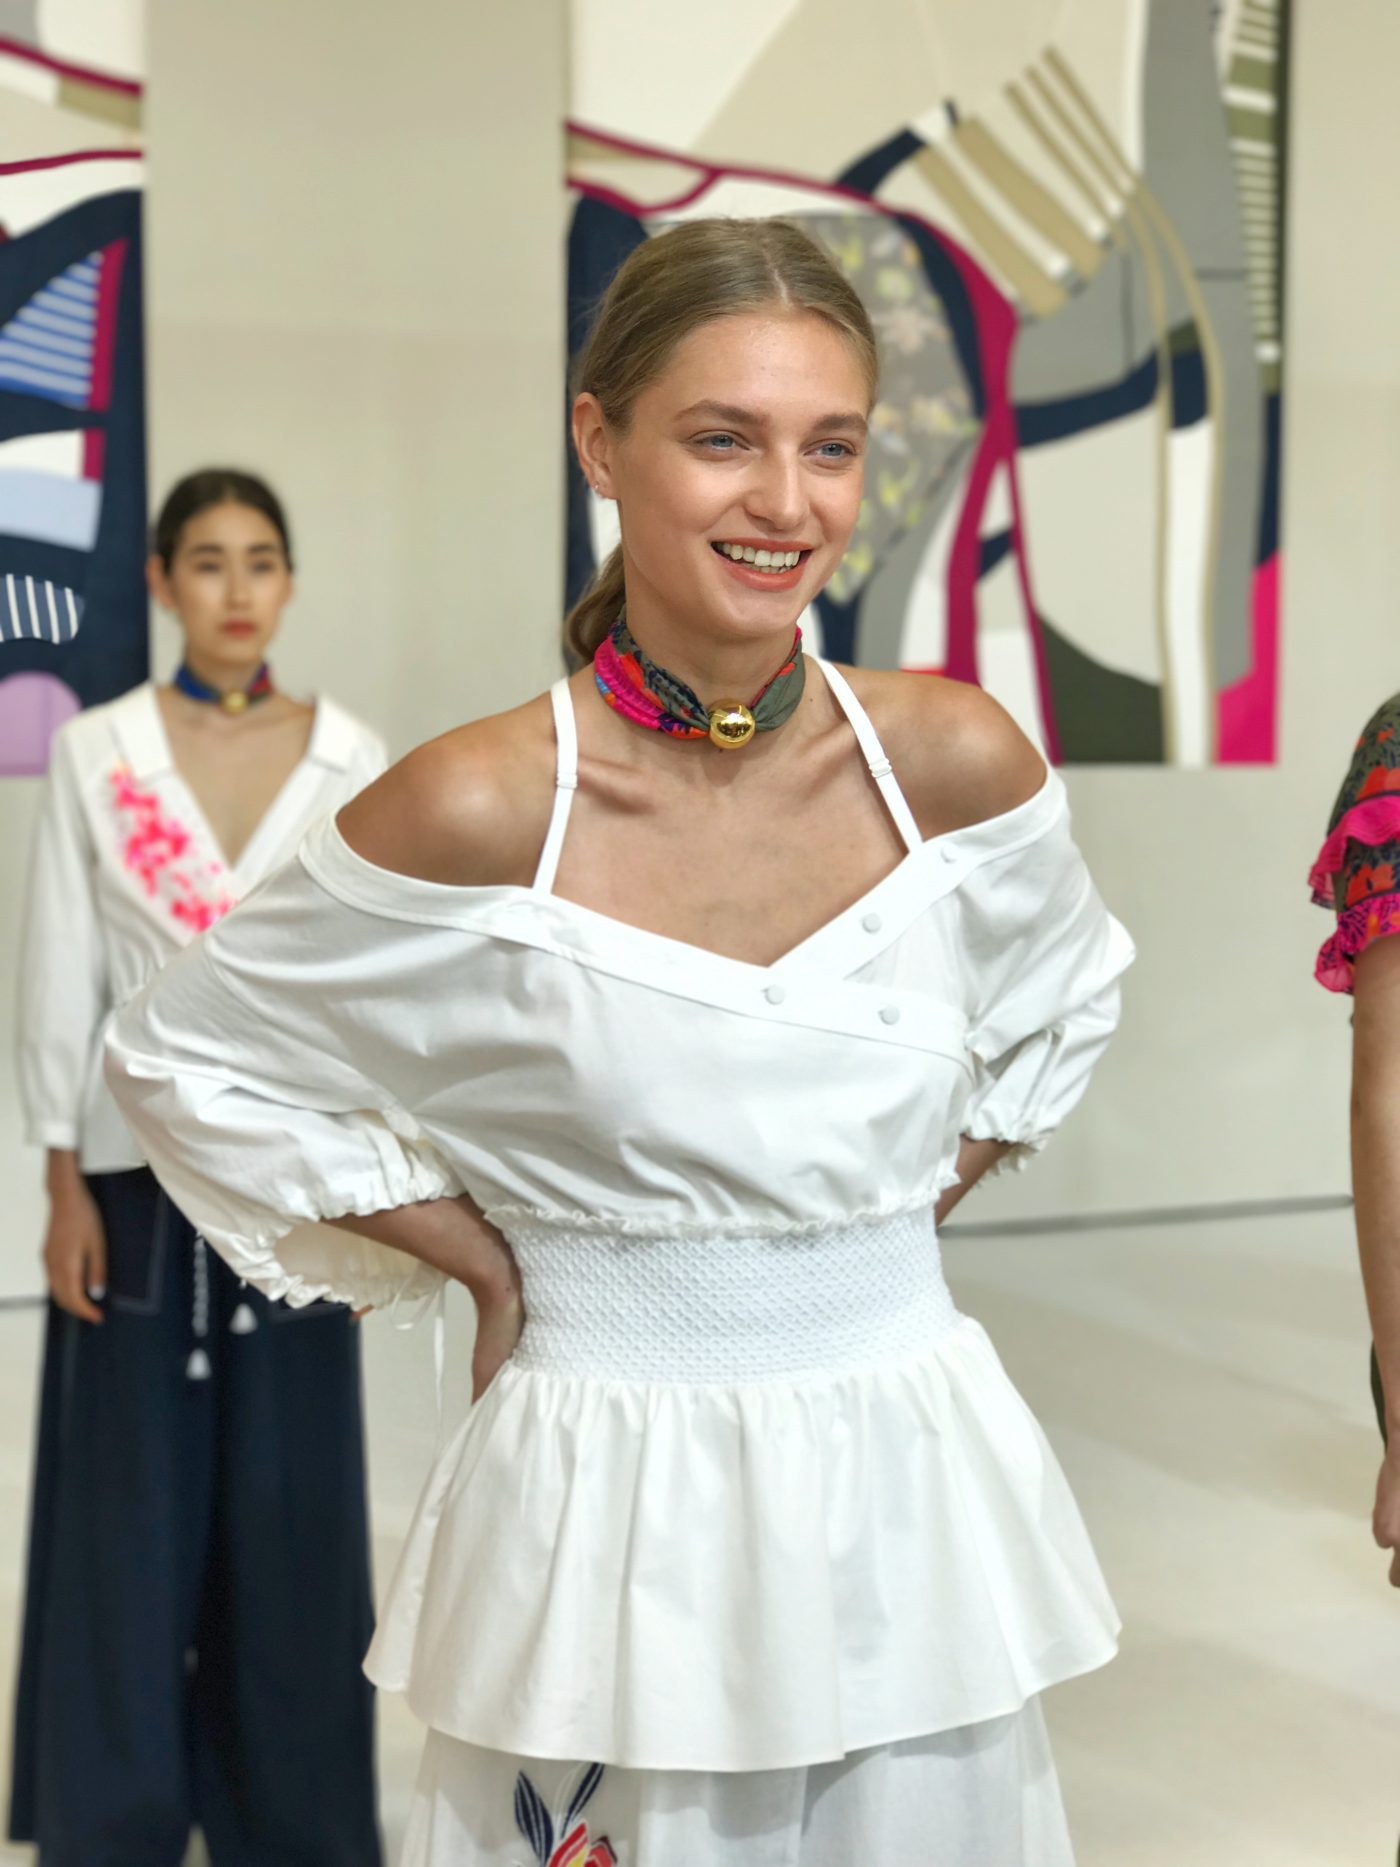 Tanya Taylor Spring Summer 2018 Collection at New York Fashion Week